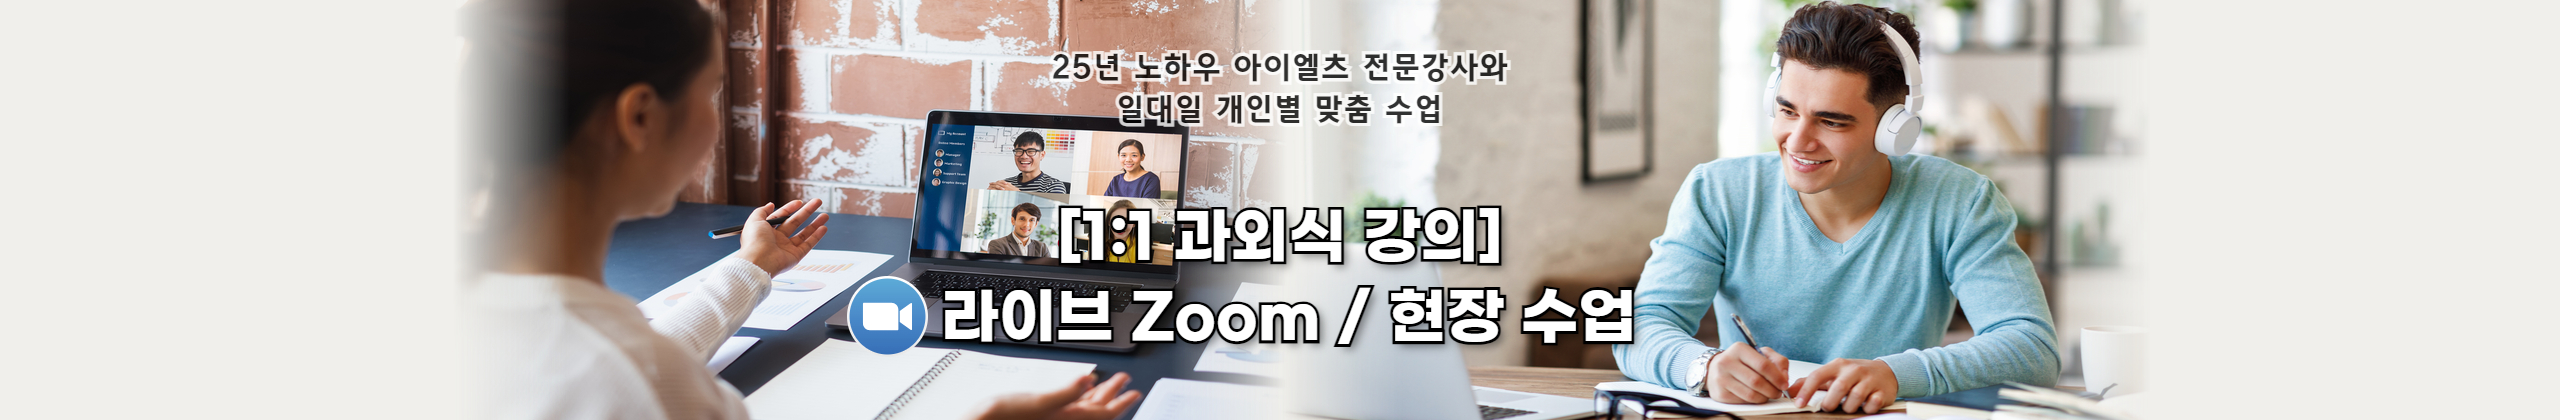 [1:1 과외식 강의] Zoom / 현장 수업